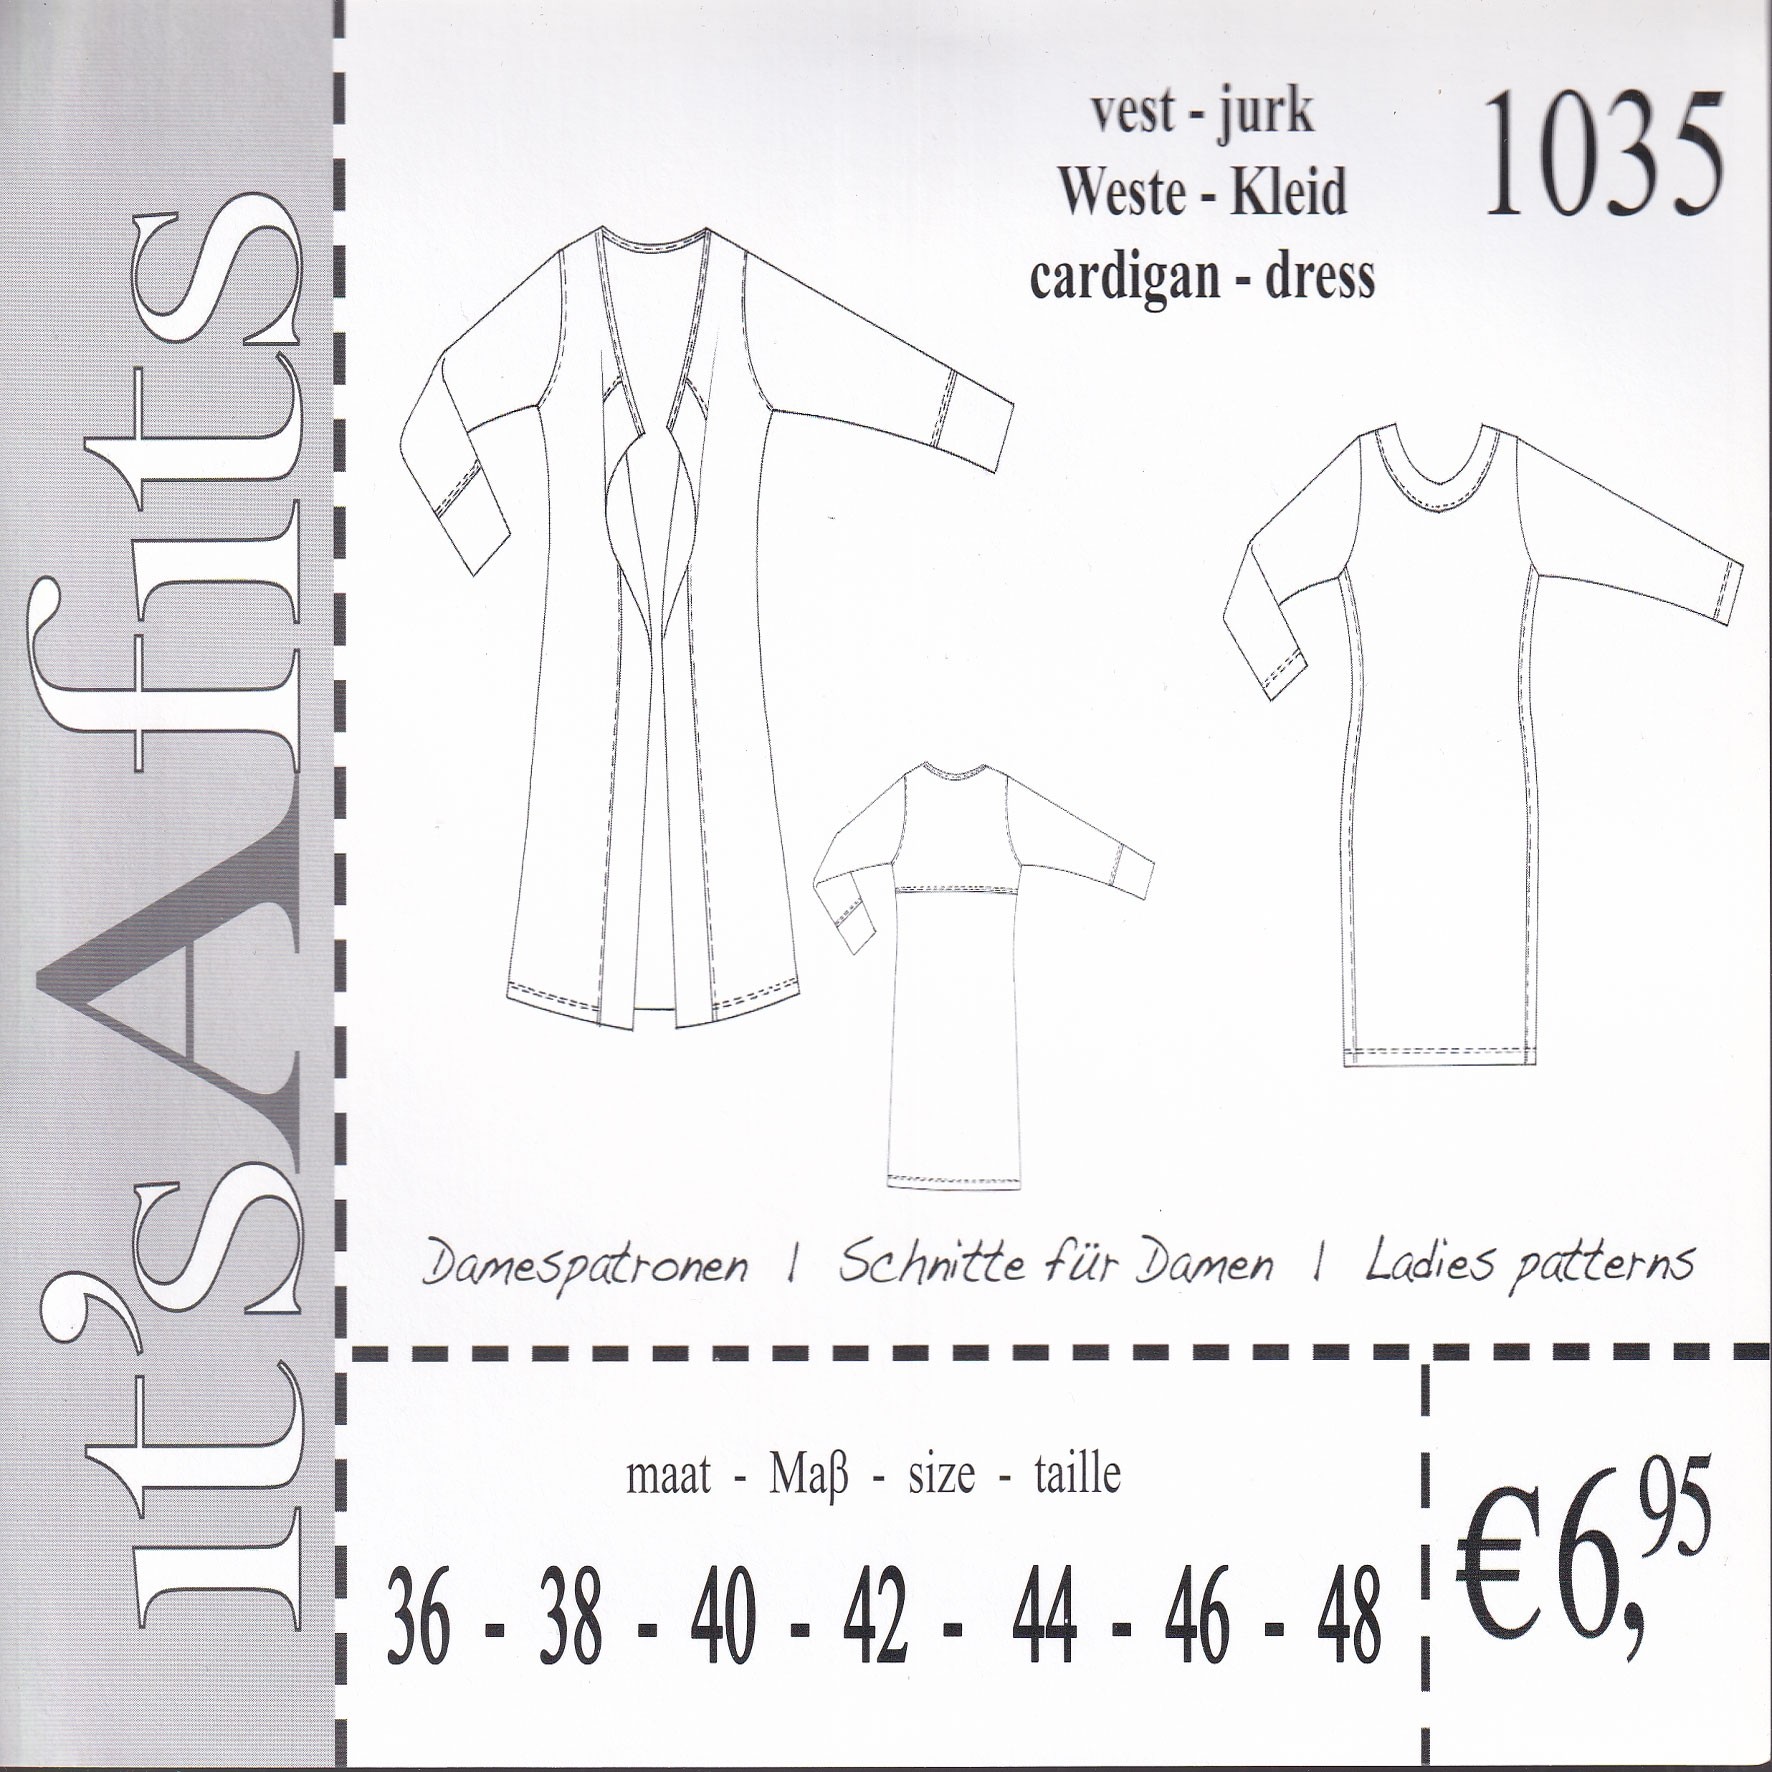 It´s a fits Cardigan und Kleid 1035, Schnittmuster für einen Cardigan und ein Kleid, Gr. 36 - 48